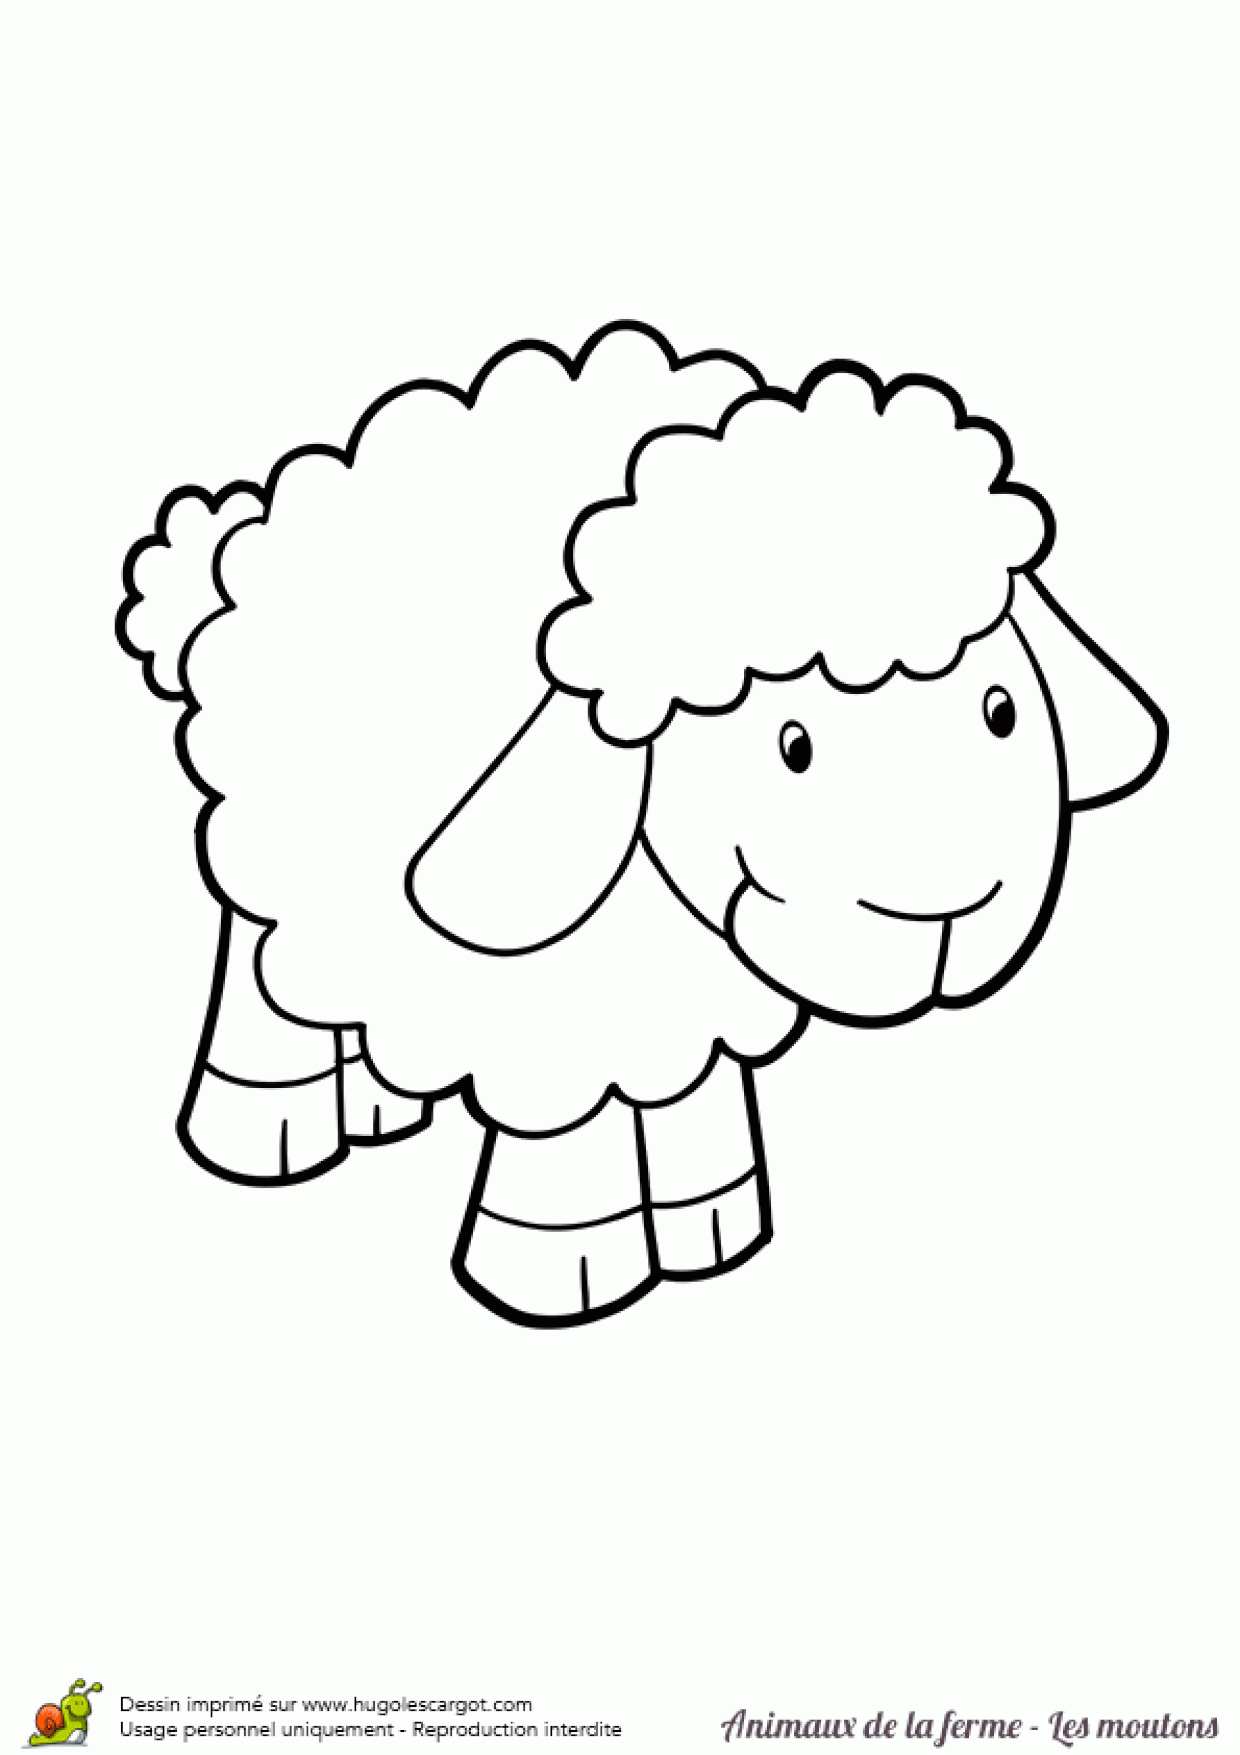 Coloriage Animaux De La Ferme Bebe Mouton Sur Hugolescargot tout Animaux De La Ferme A Imprimer 